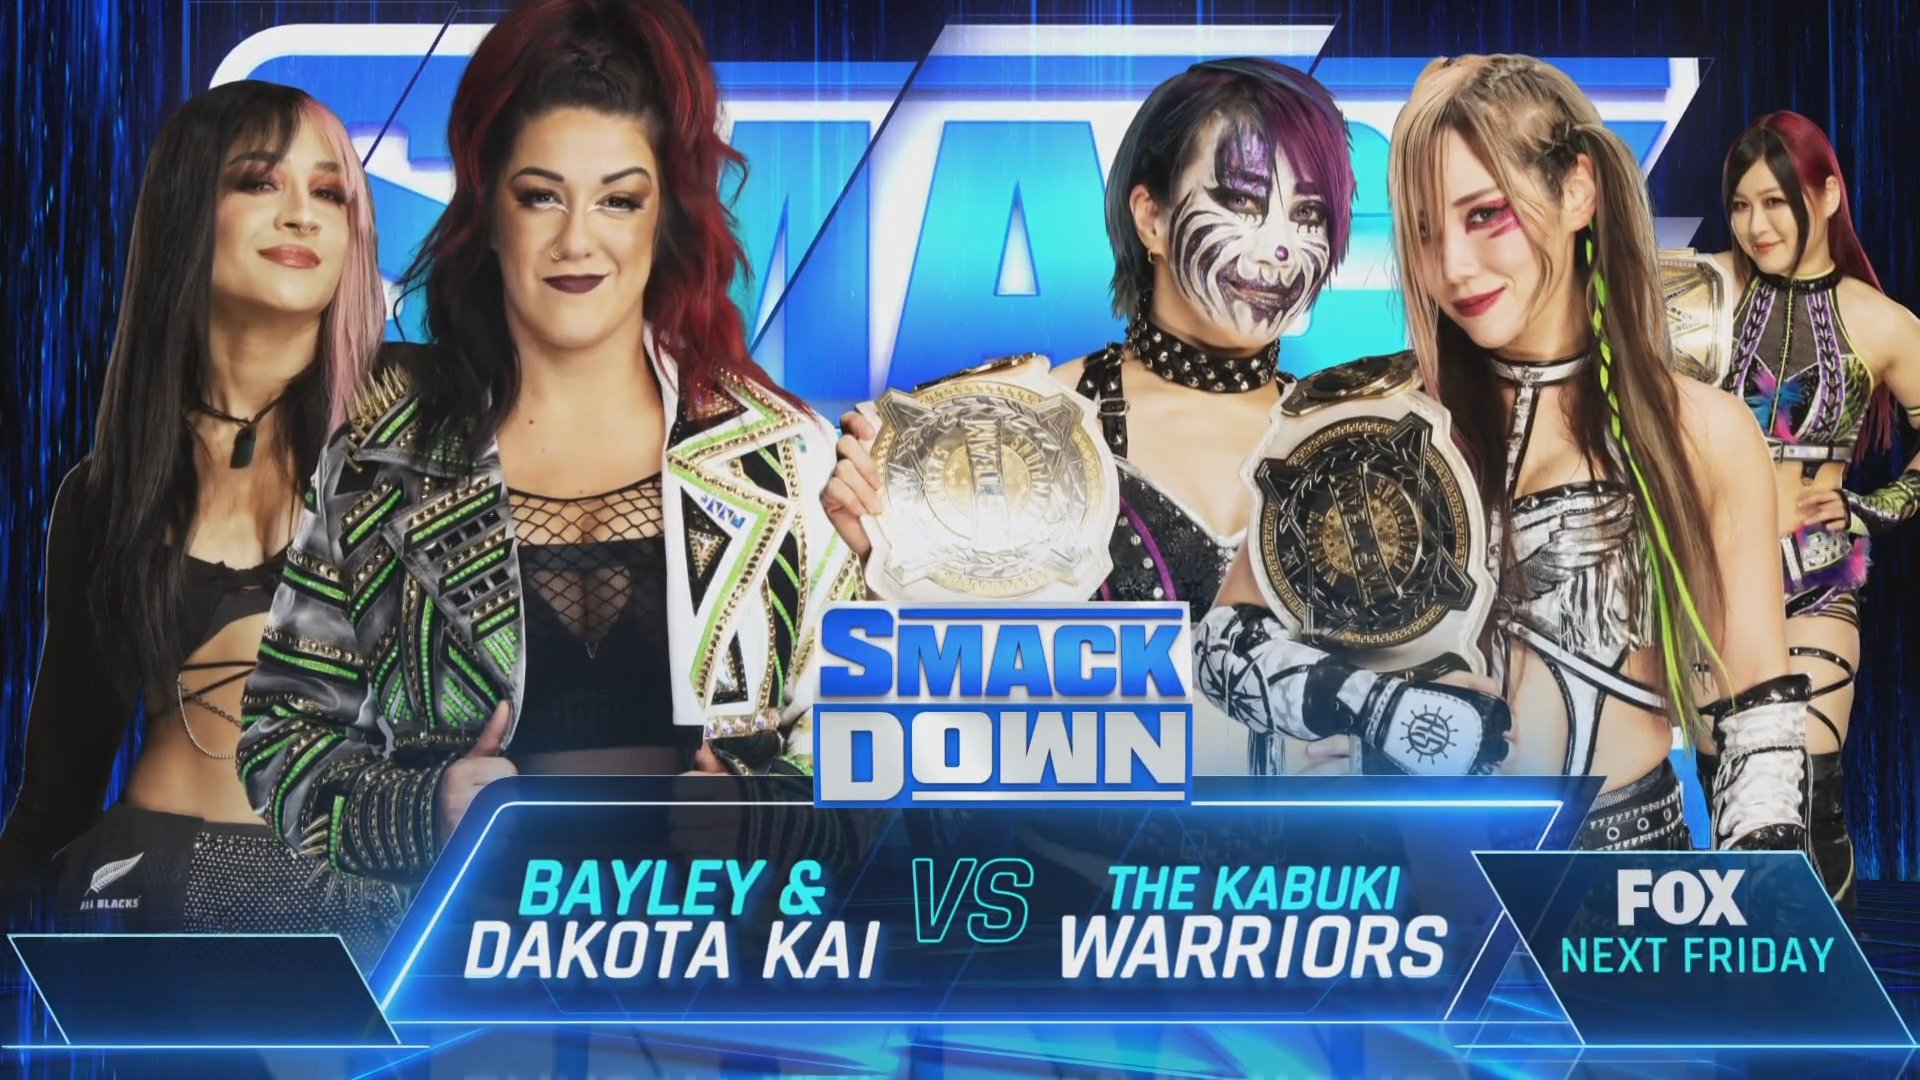 Dakota Kai & Bayley vs. The Kabuki Warriors Added To March 1 SmackDown